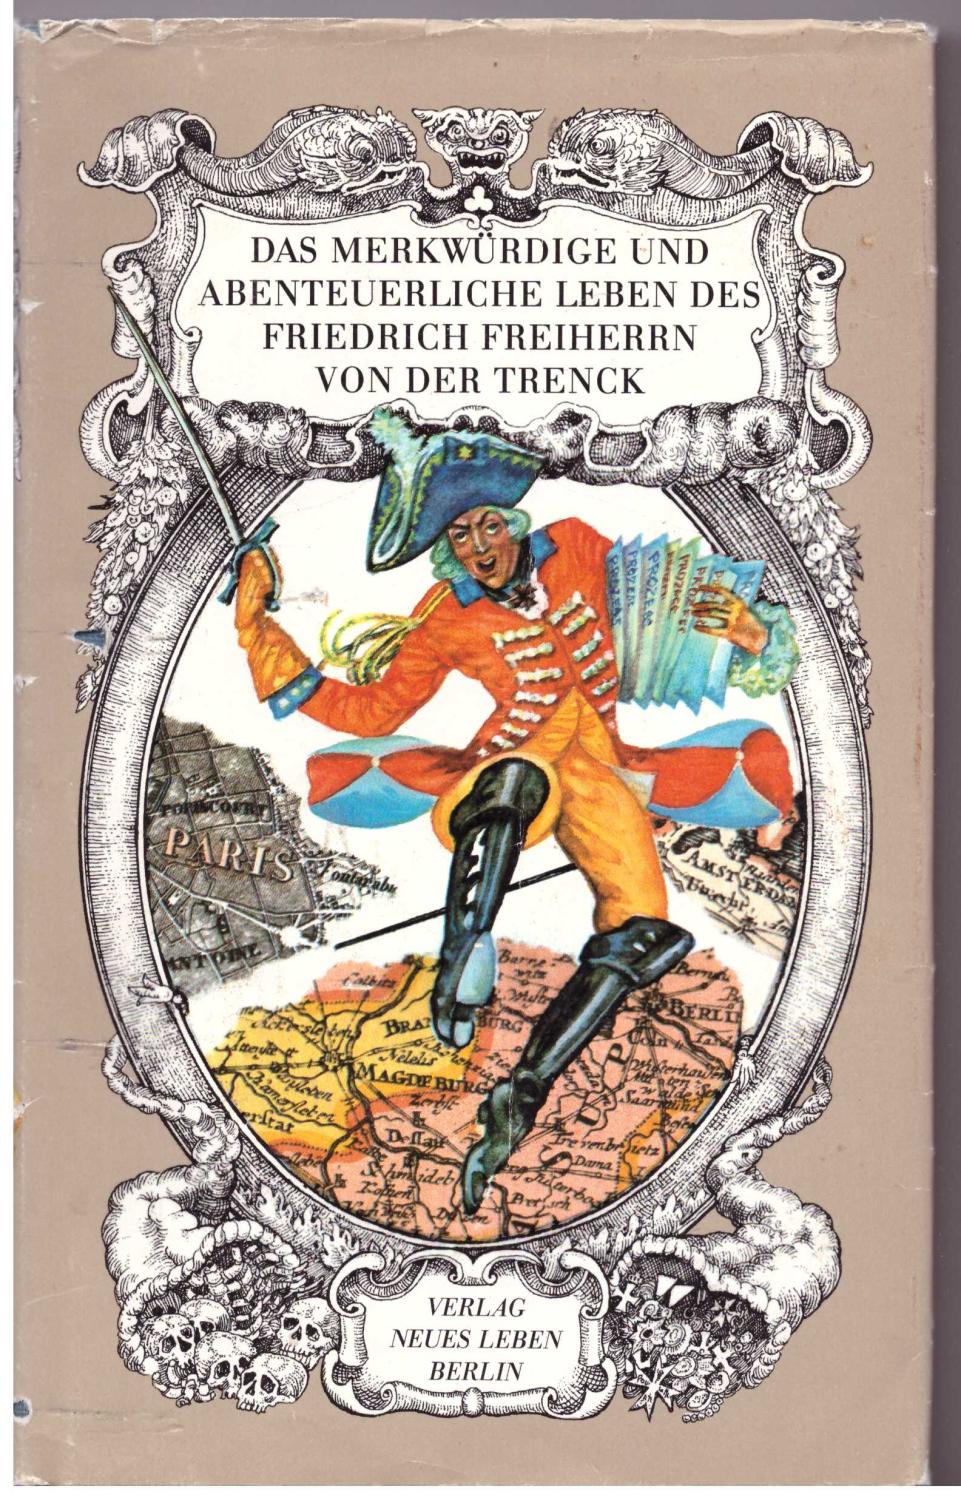 Das merkwürdige und abenteuerliche Leben des Friedrich Freiherrn von der Trenck: von ihm selbst erzählt